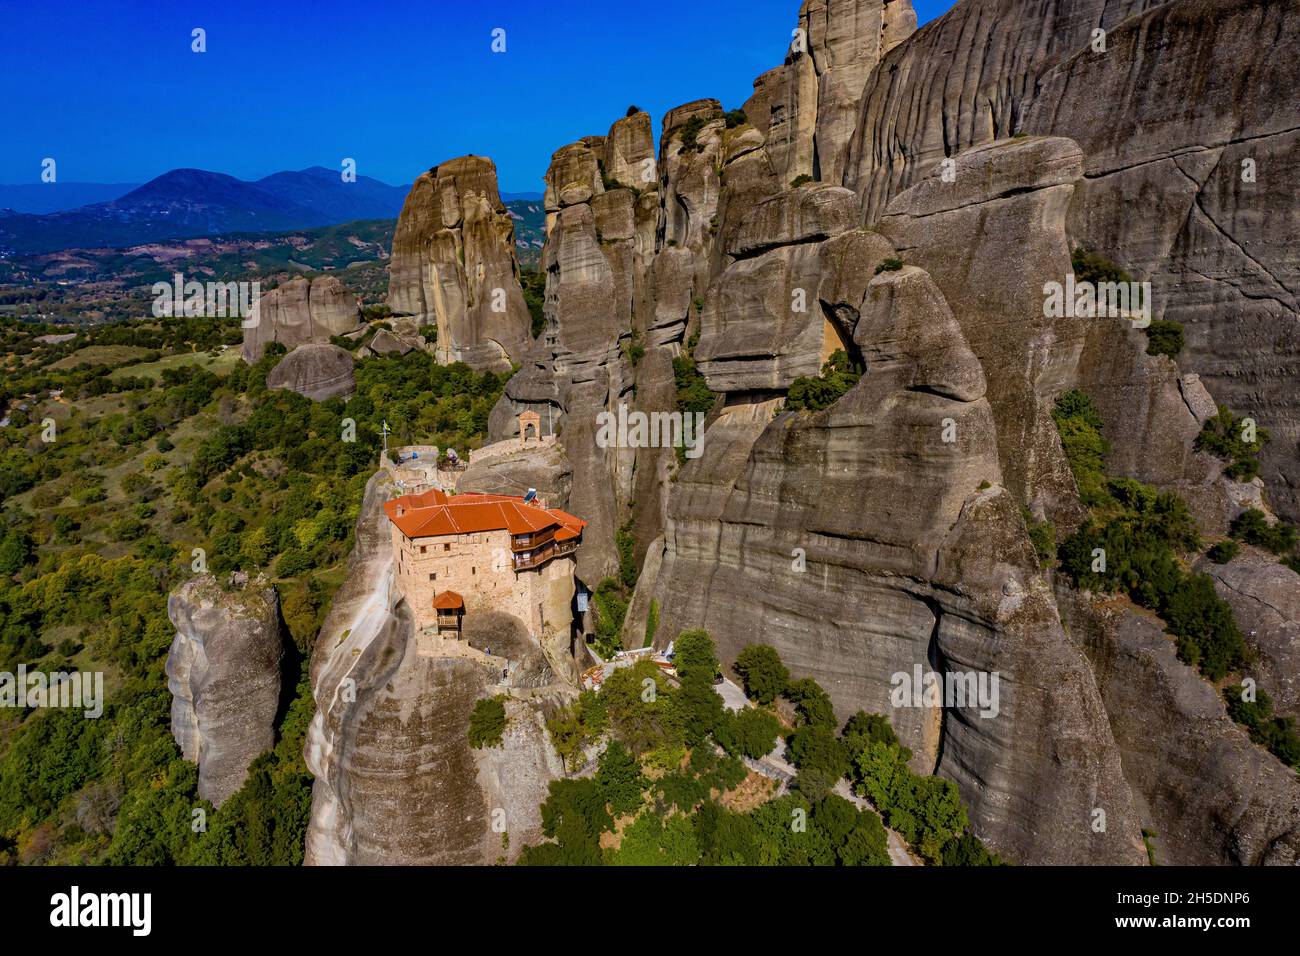 Meteora Klöster aus der Luft | Luftbilder von den Meteora Klöstern in Griechenland | Meteora monasteries in Greece from above Stock Photo